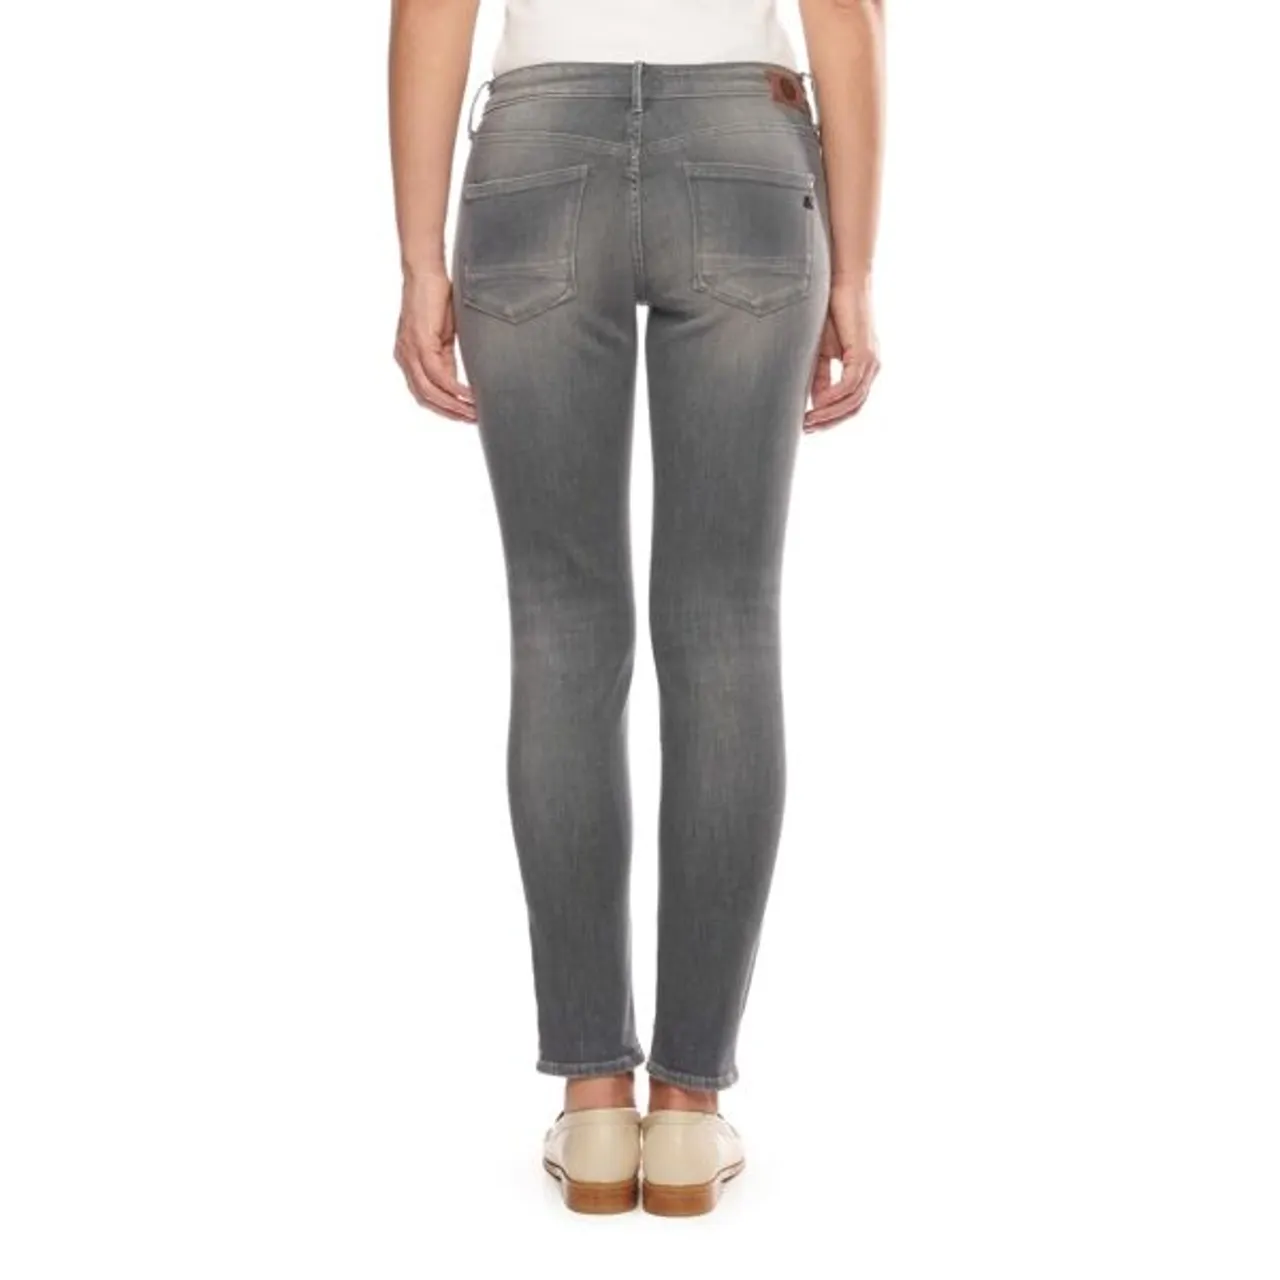 Slim-fit-Jeans LE TEMPS DES CERISES Gr. 33, EURO-Größen, grau (anthrazit) Damen Jeans Röhrenjeans